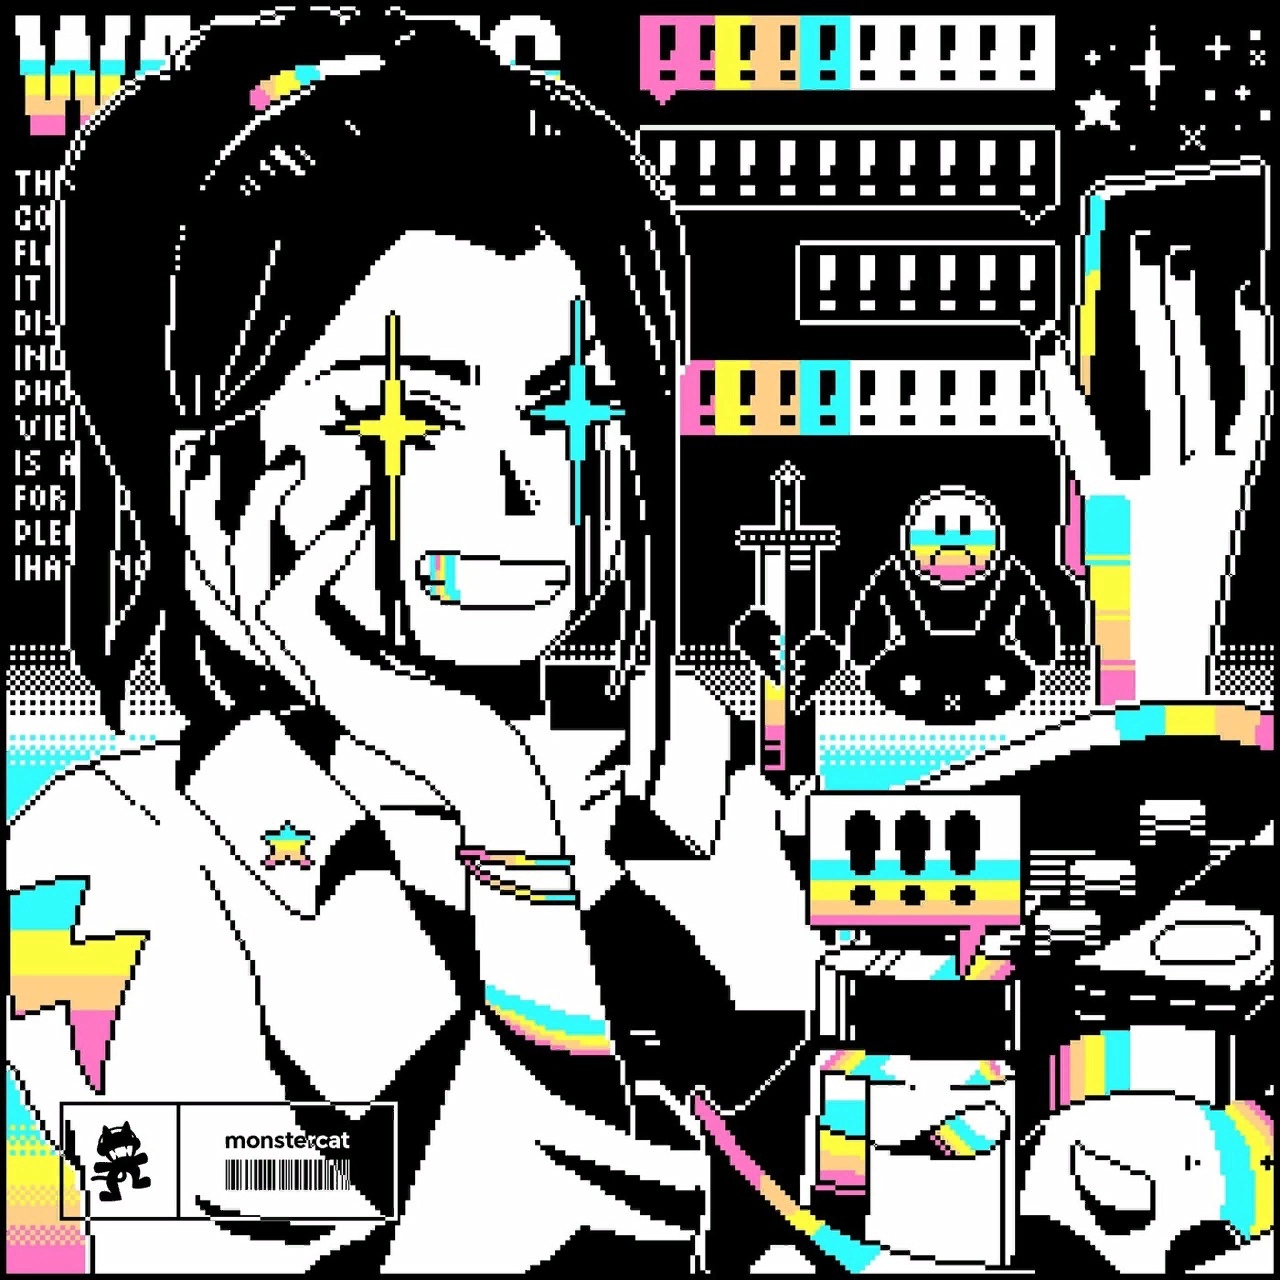 No Mana featuring SOFI — Digital Friends cover artwork